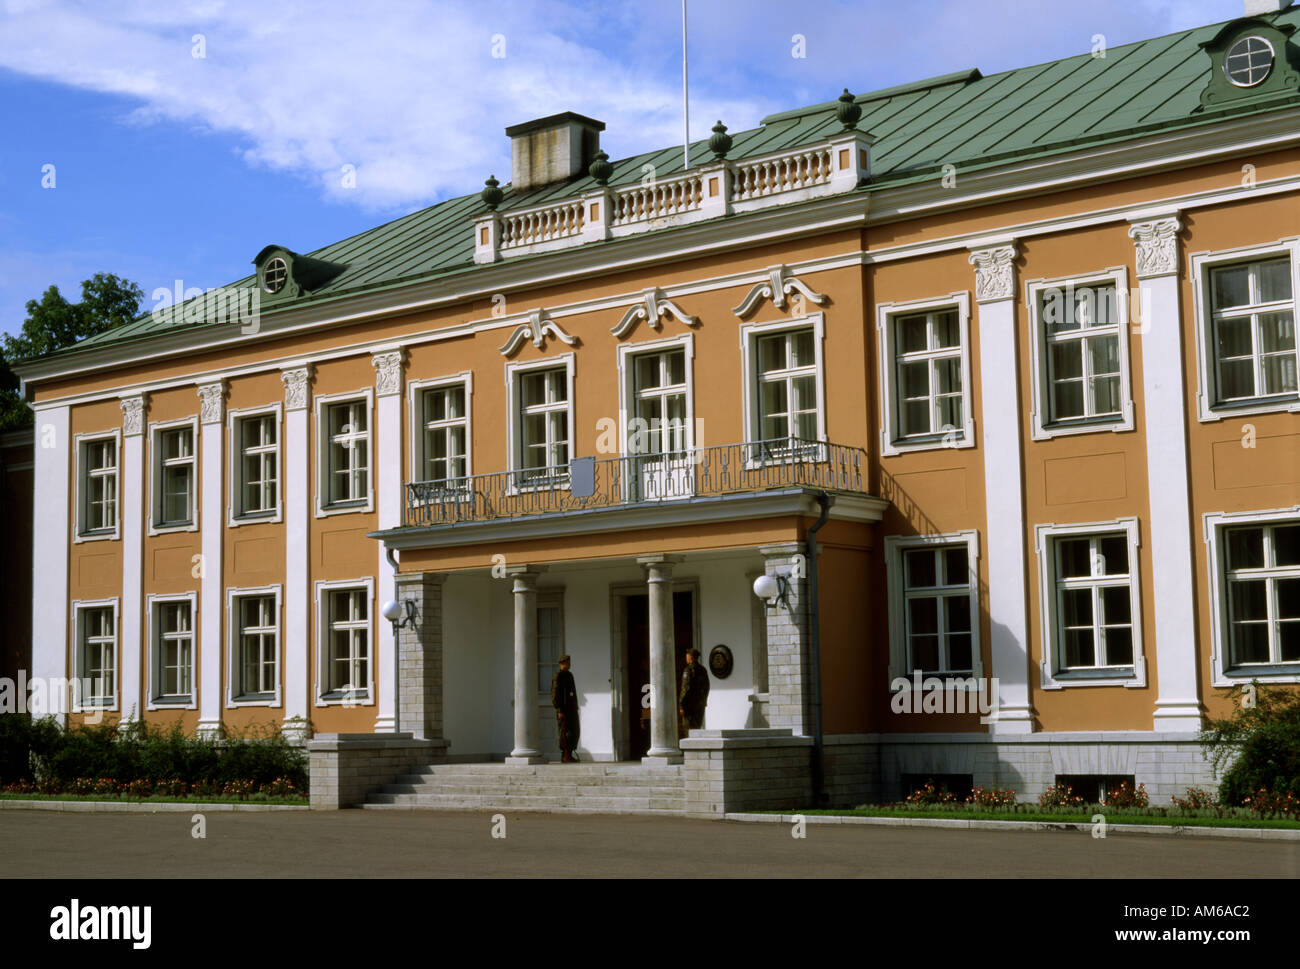 Estonia Tallinn Kadriorg palace Stock Photo